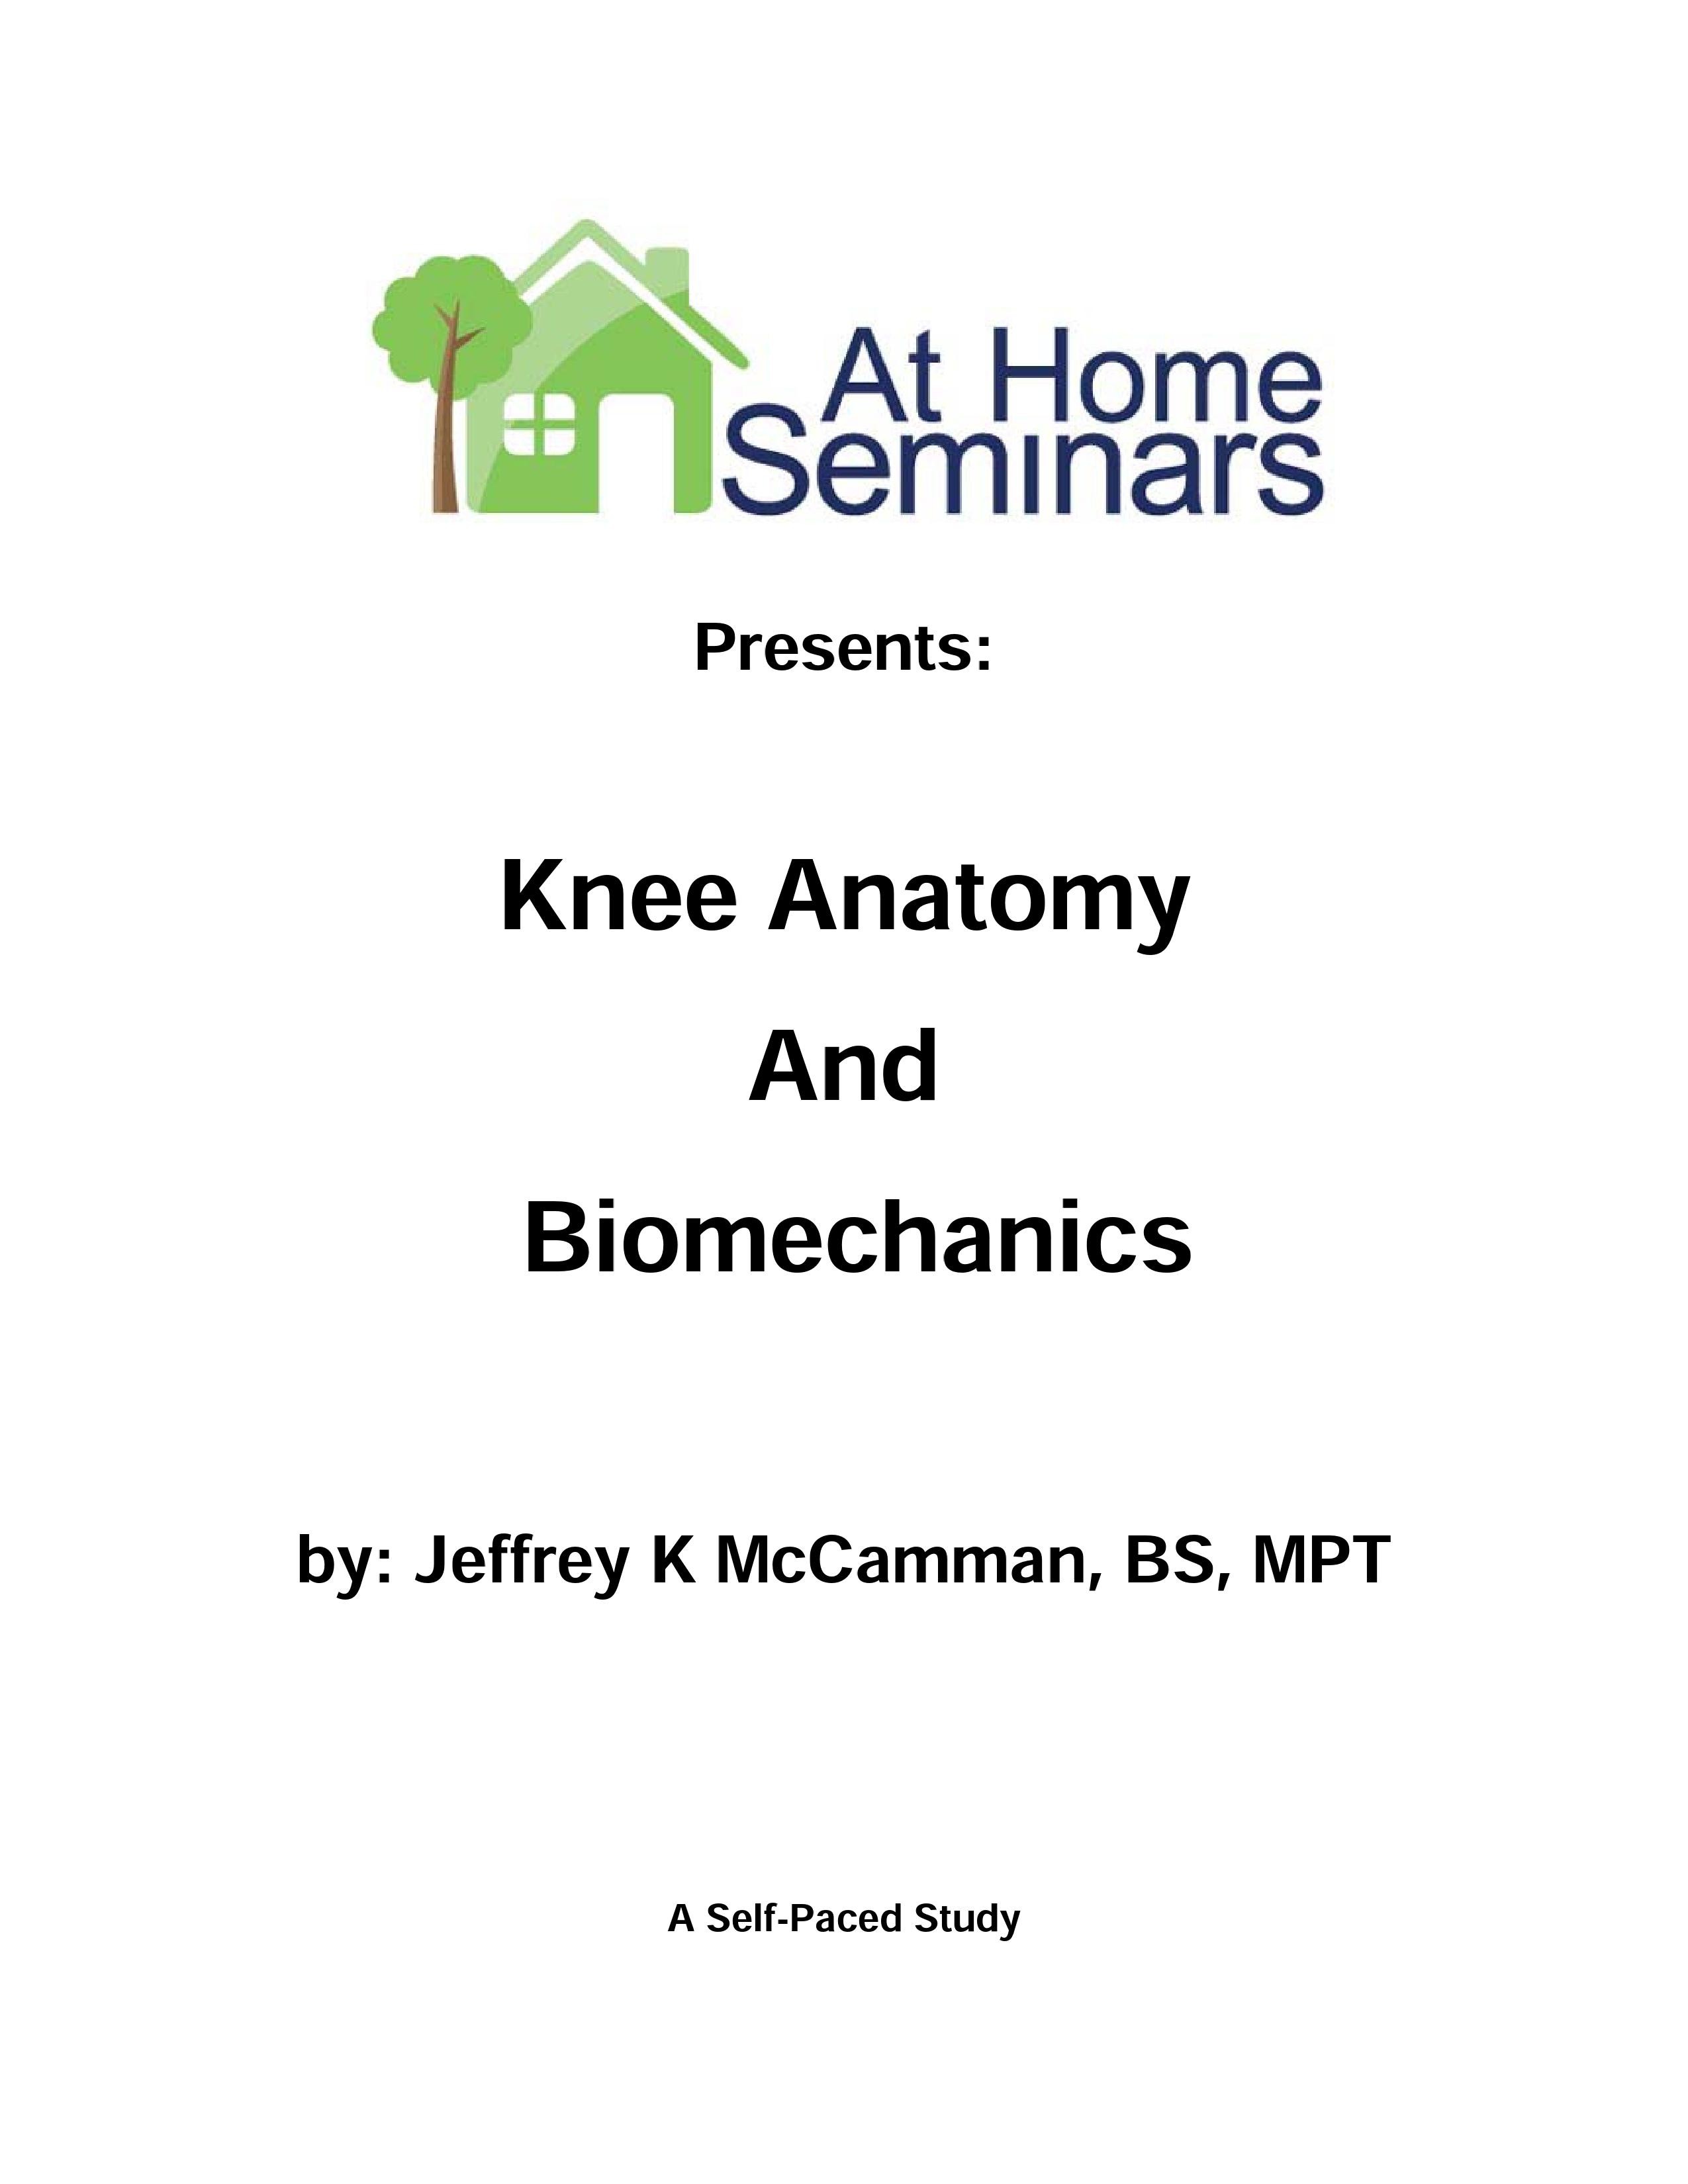 Share A Course: Knee Anatomy and Biomechanics